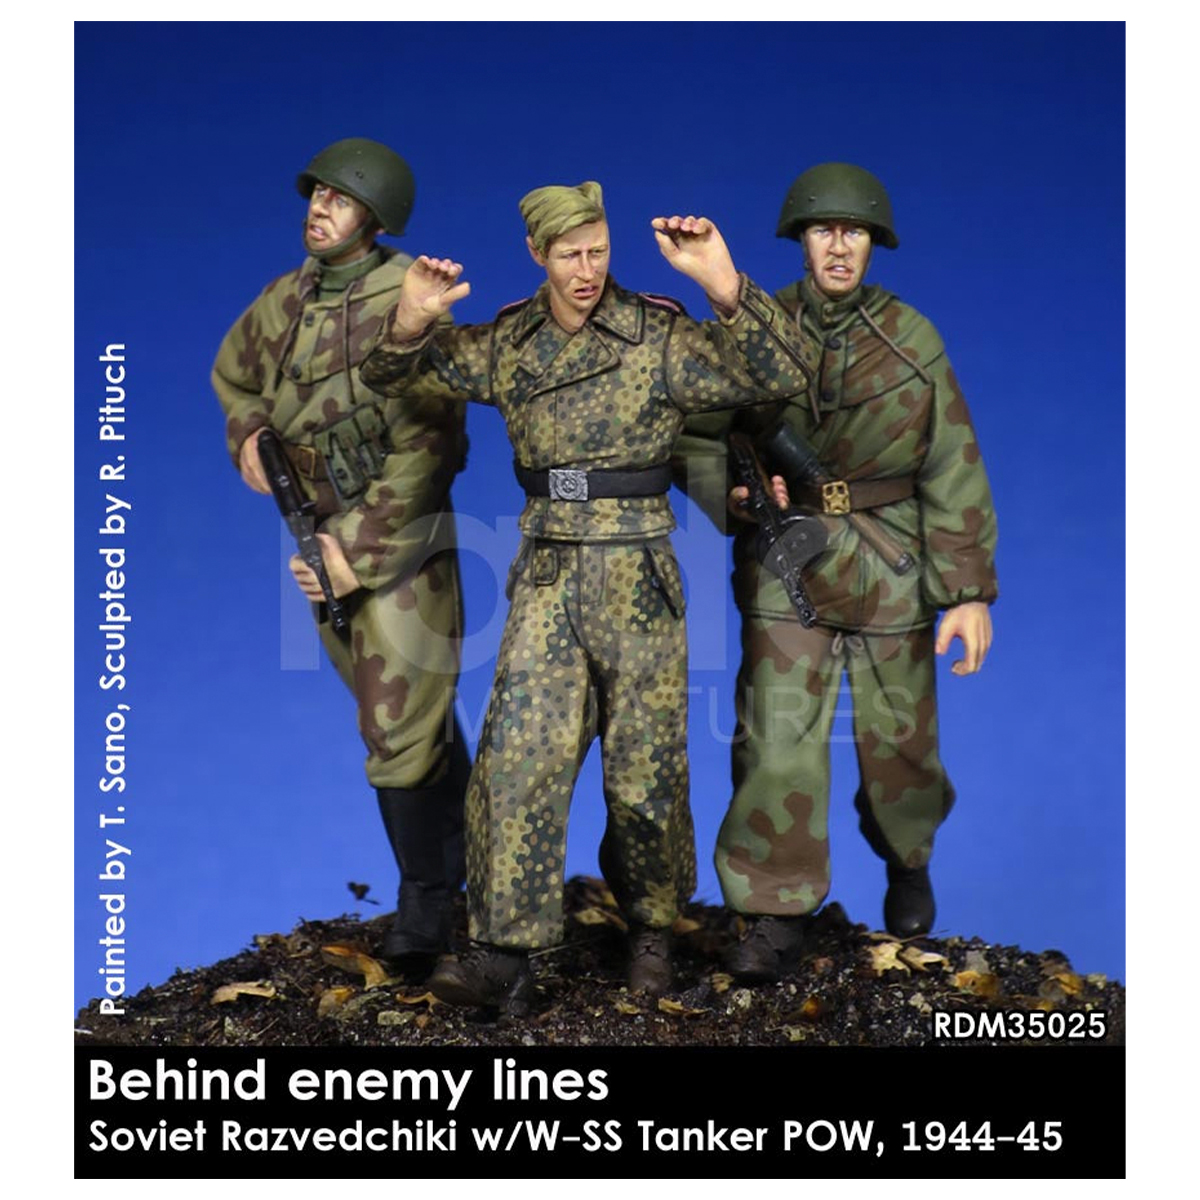 Behind enemy lines 1/35